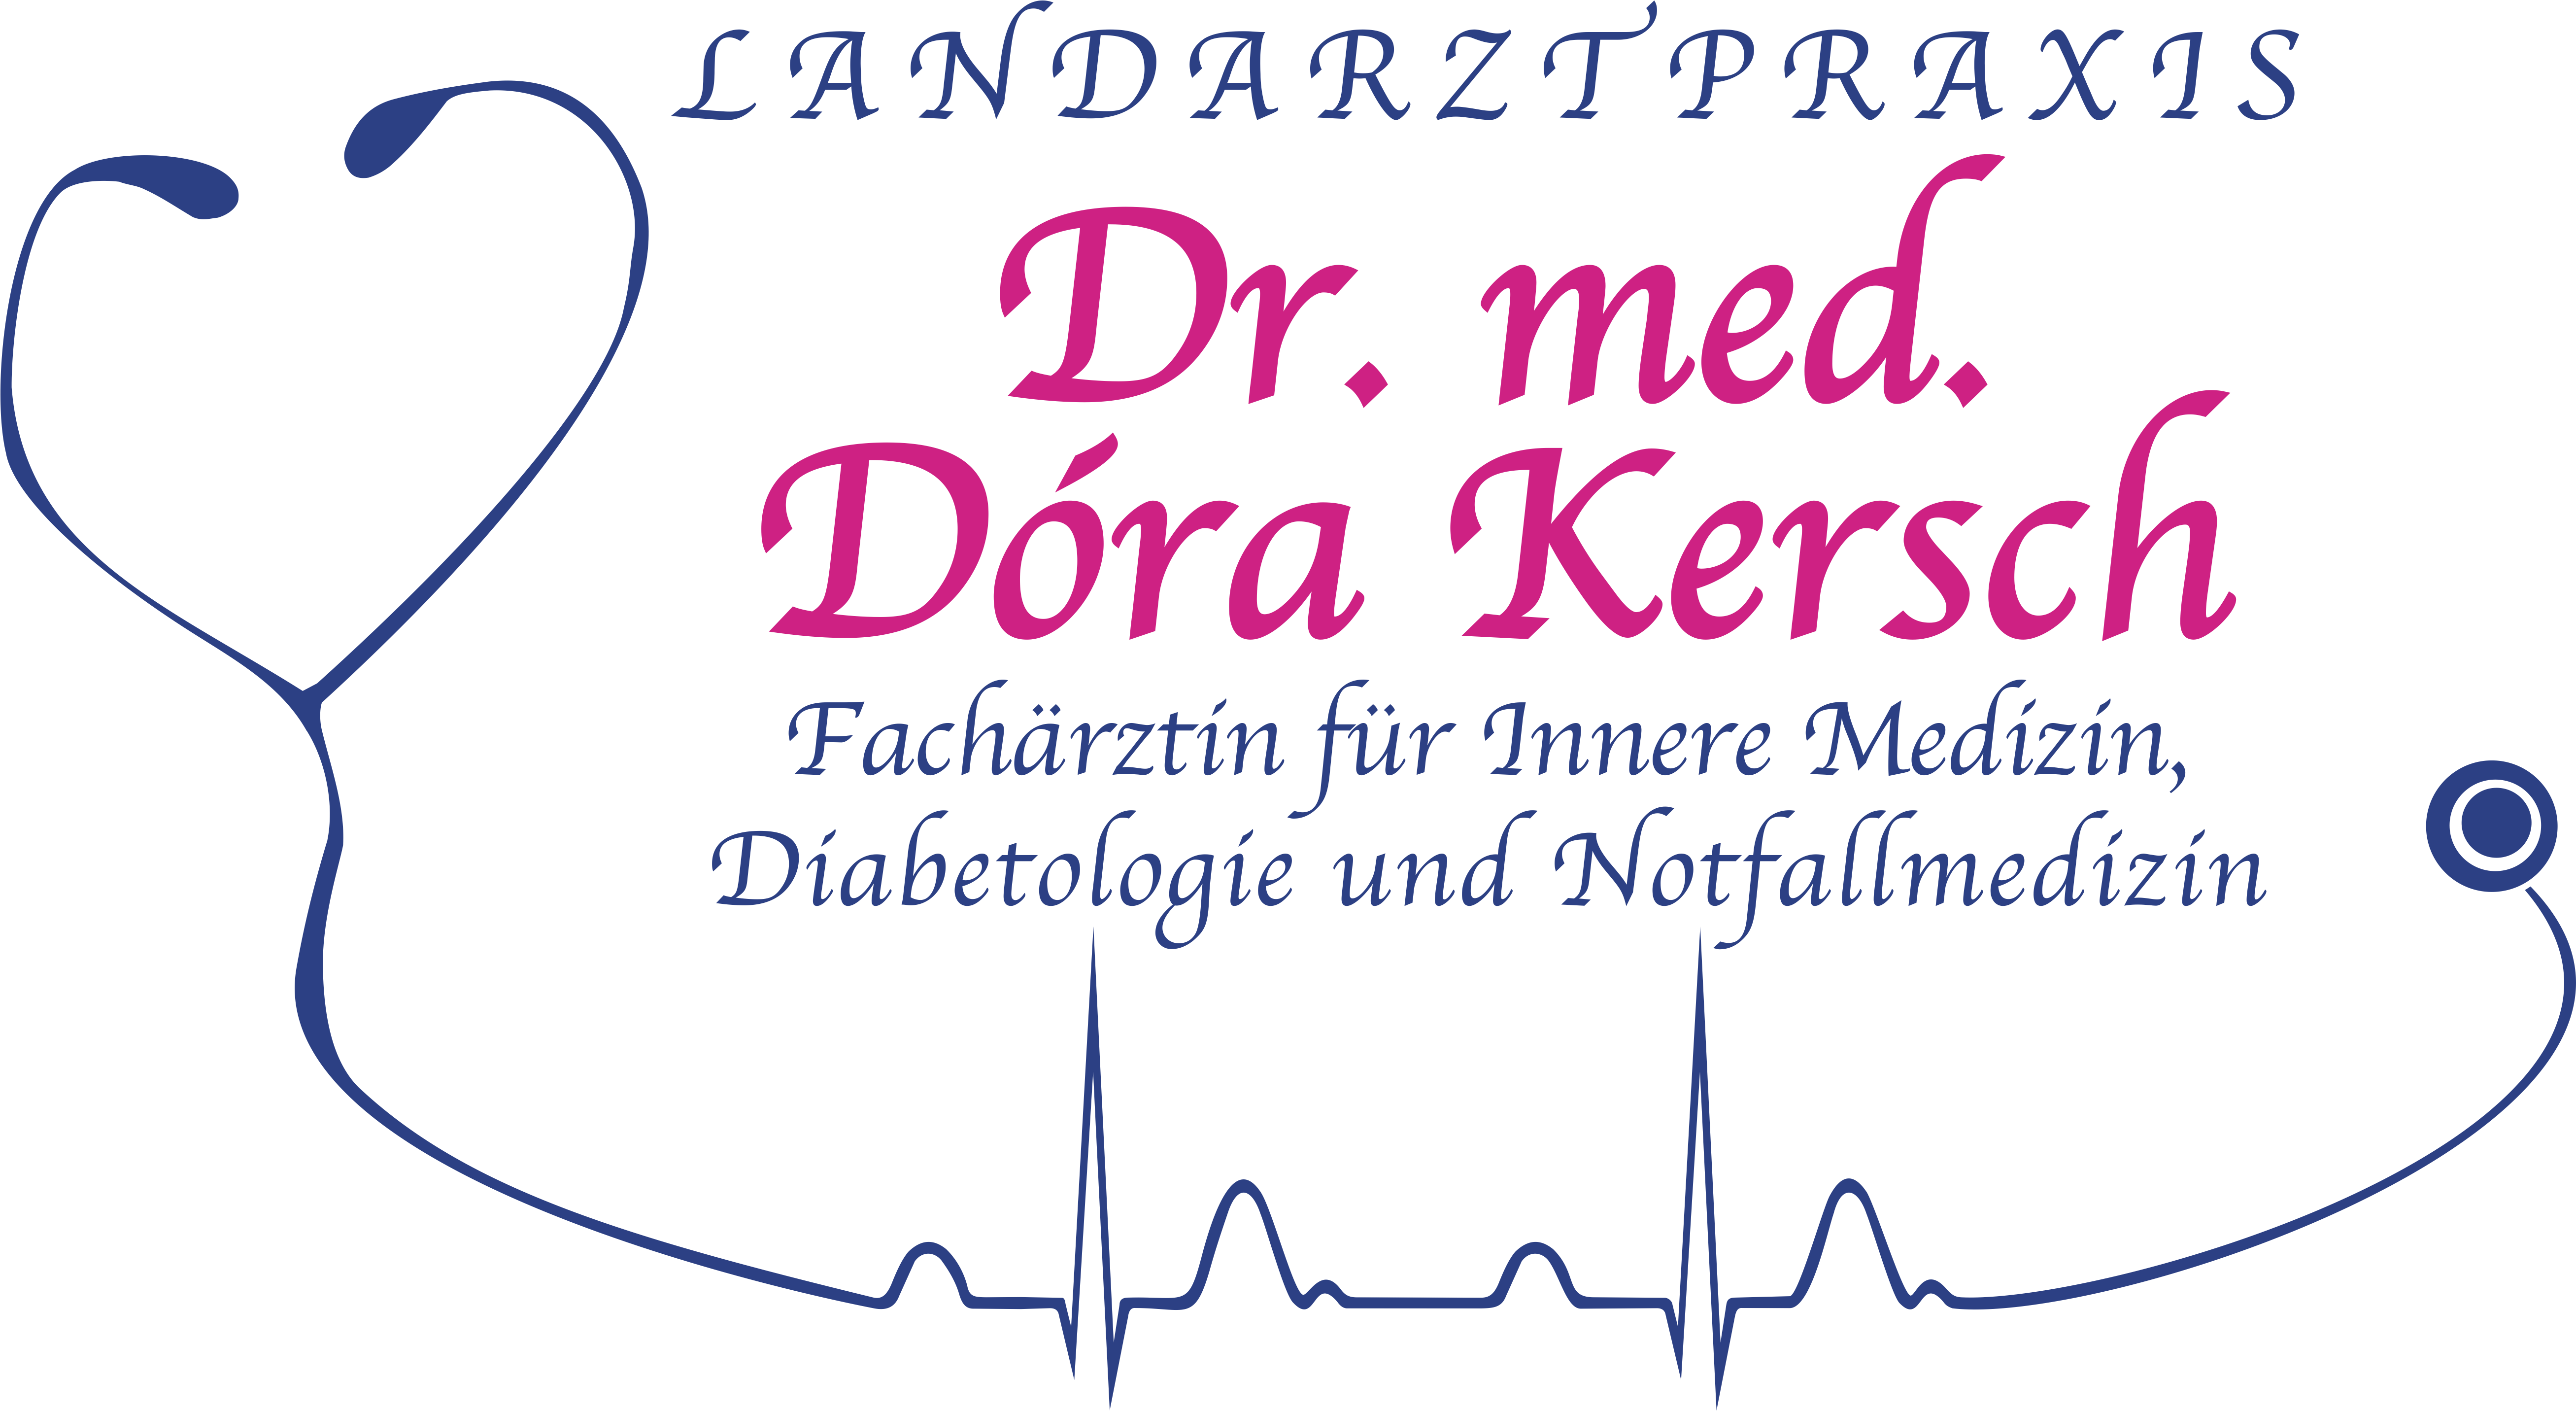 Landarztpraxis Dr. Dóra Kersch